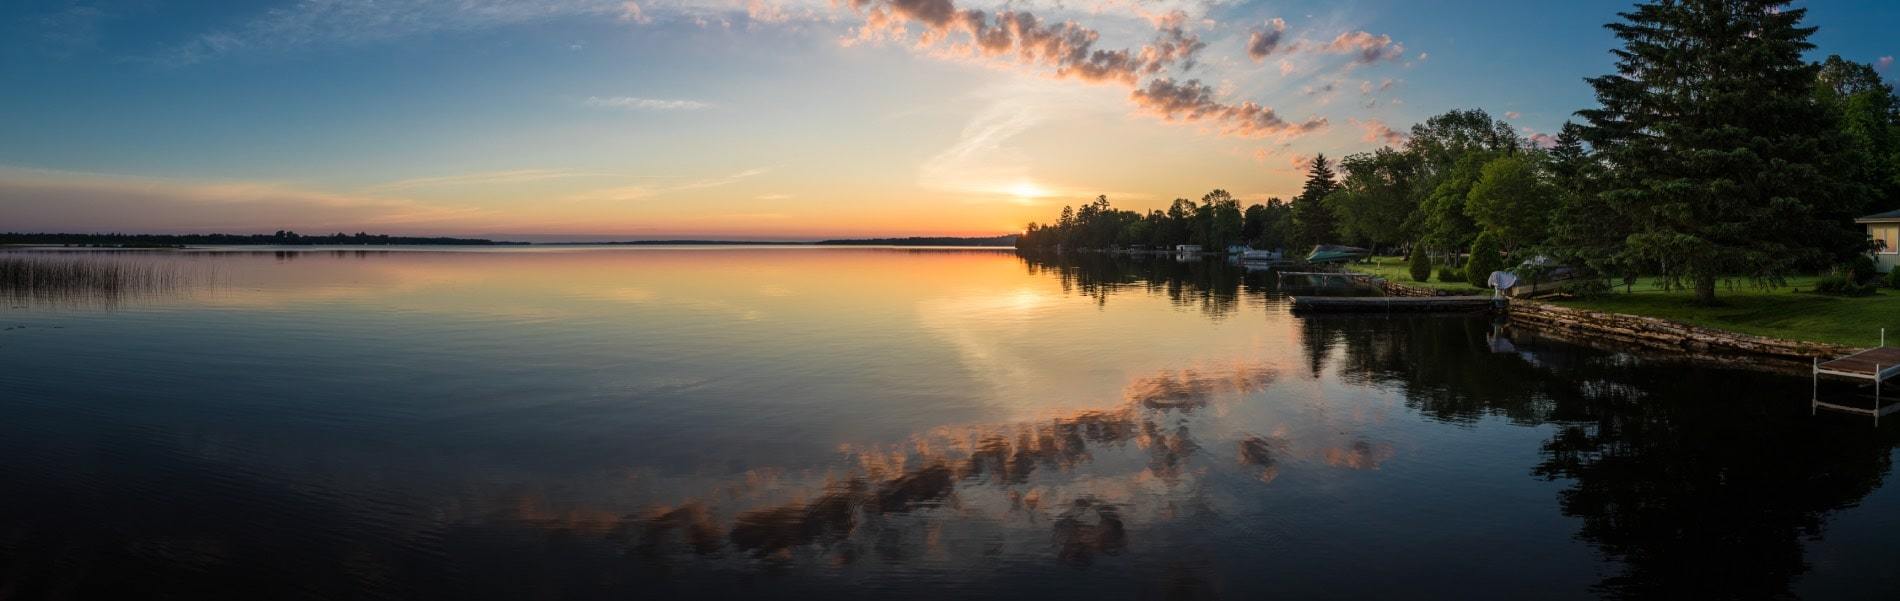 Lake Ontario at sunset